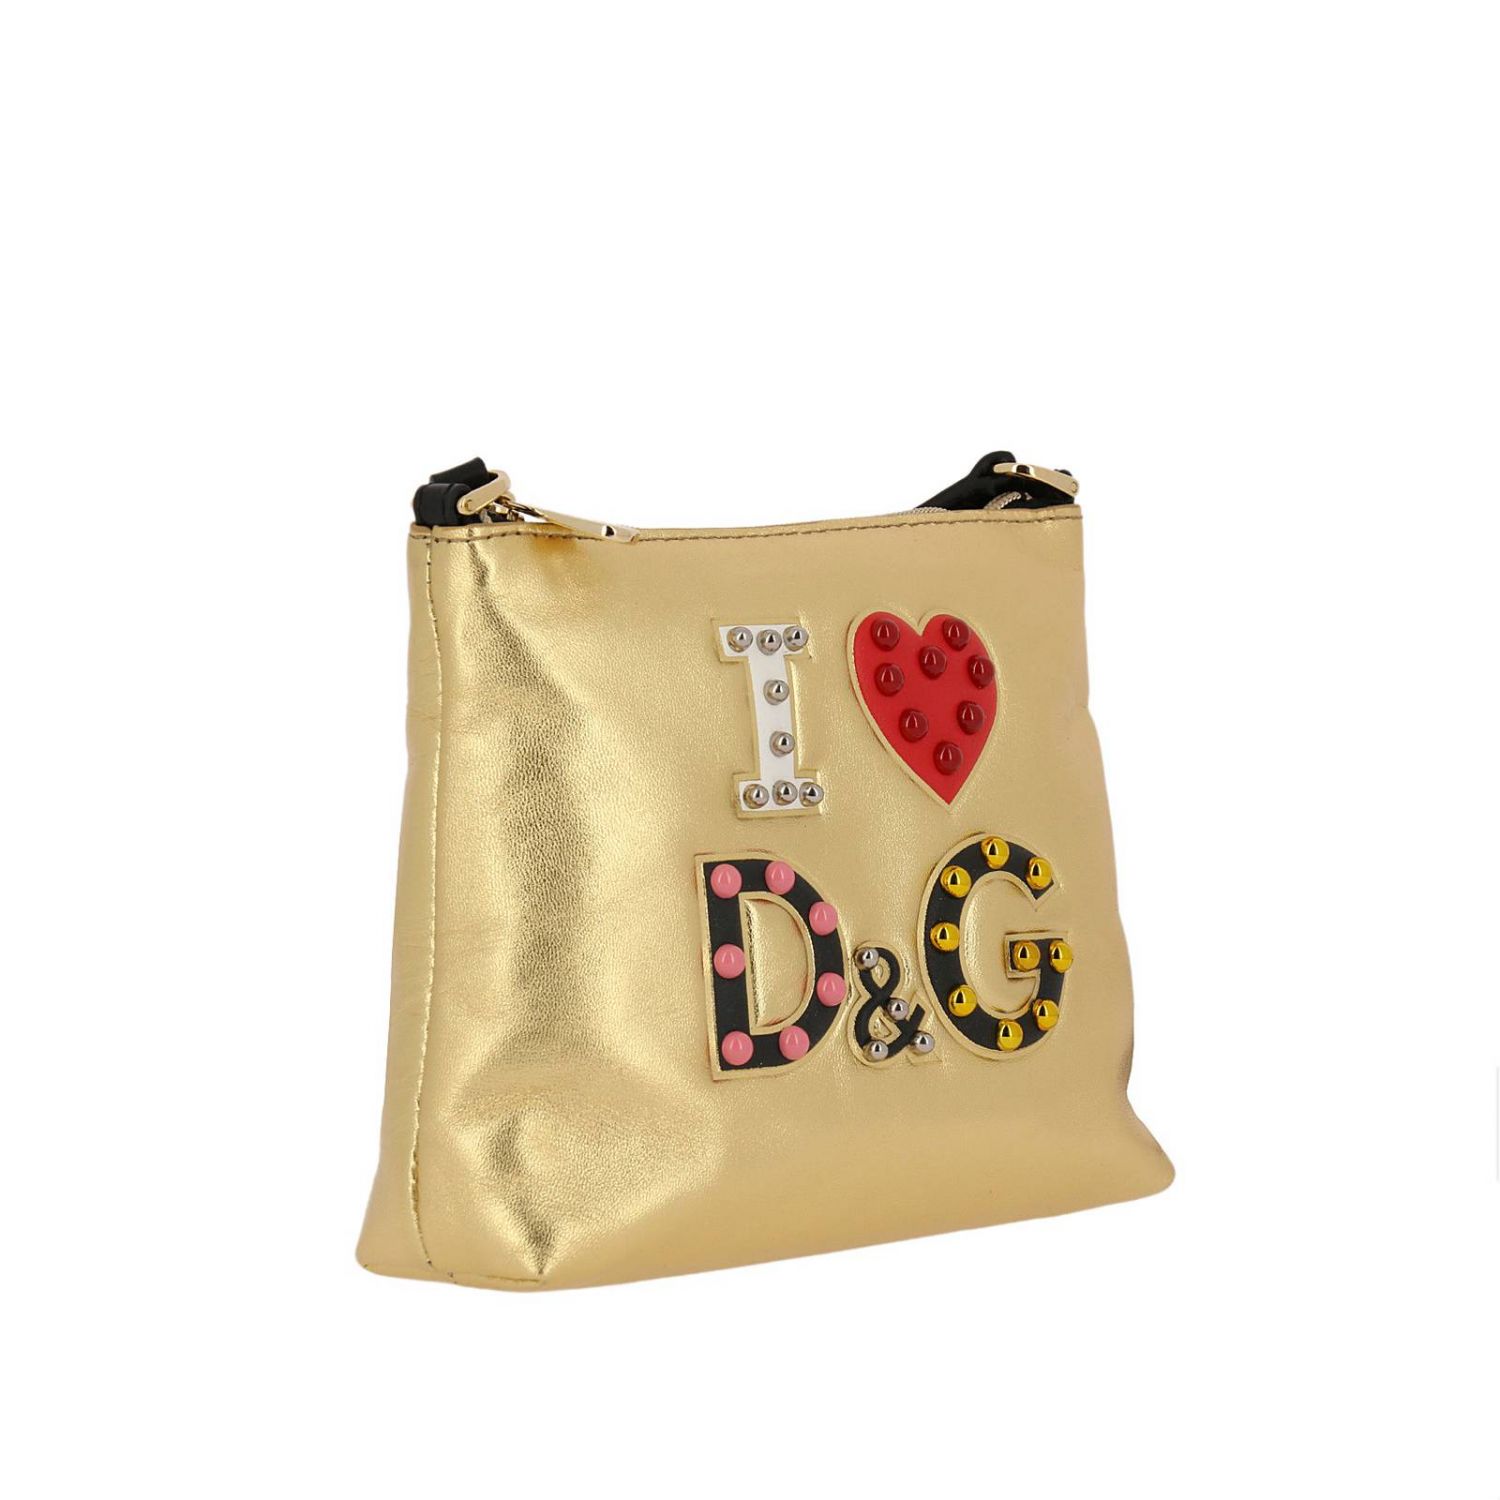 Dolce & Gabbana Outlet: Bag kids | Bag Dolce & Gabbana Kids Gold | Bag